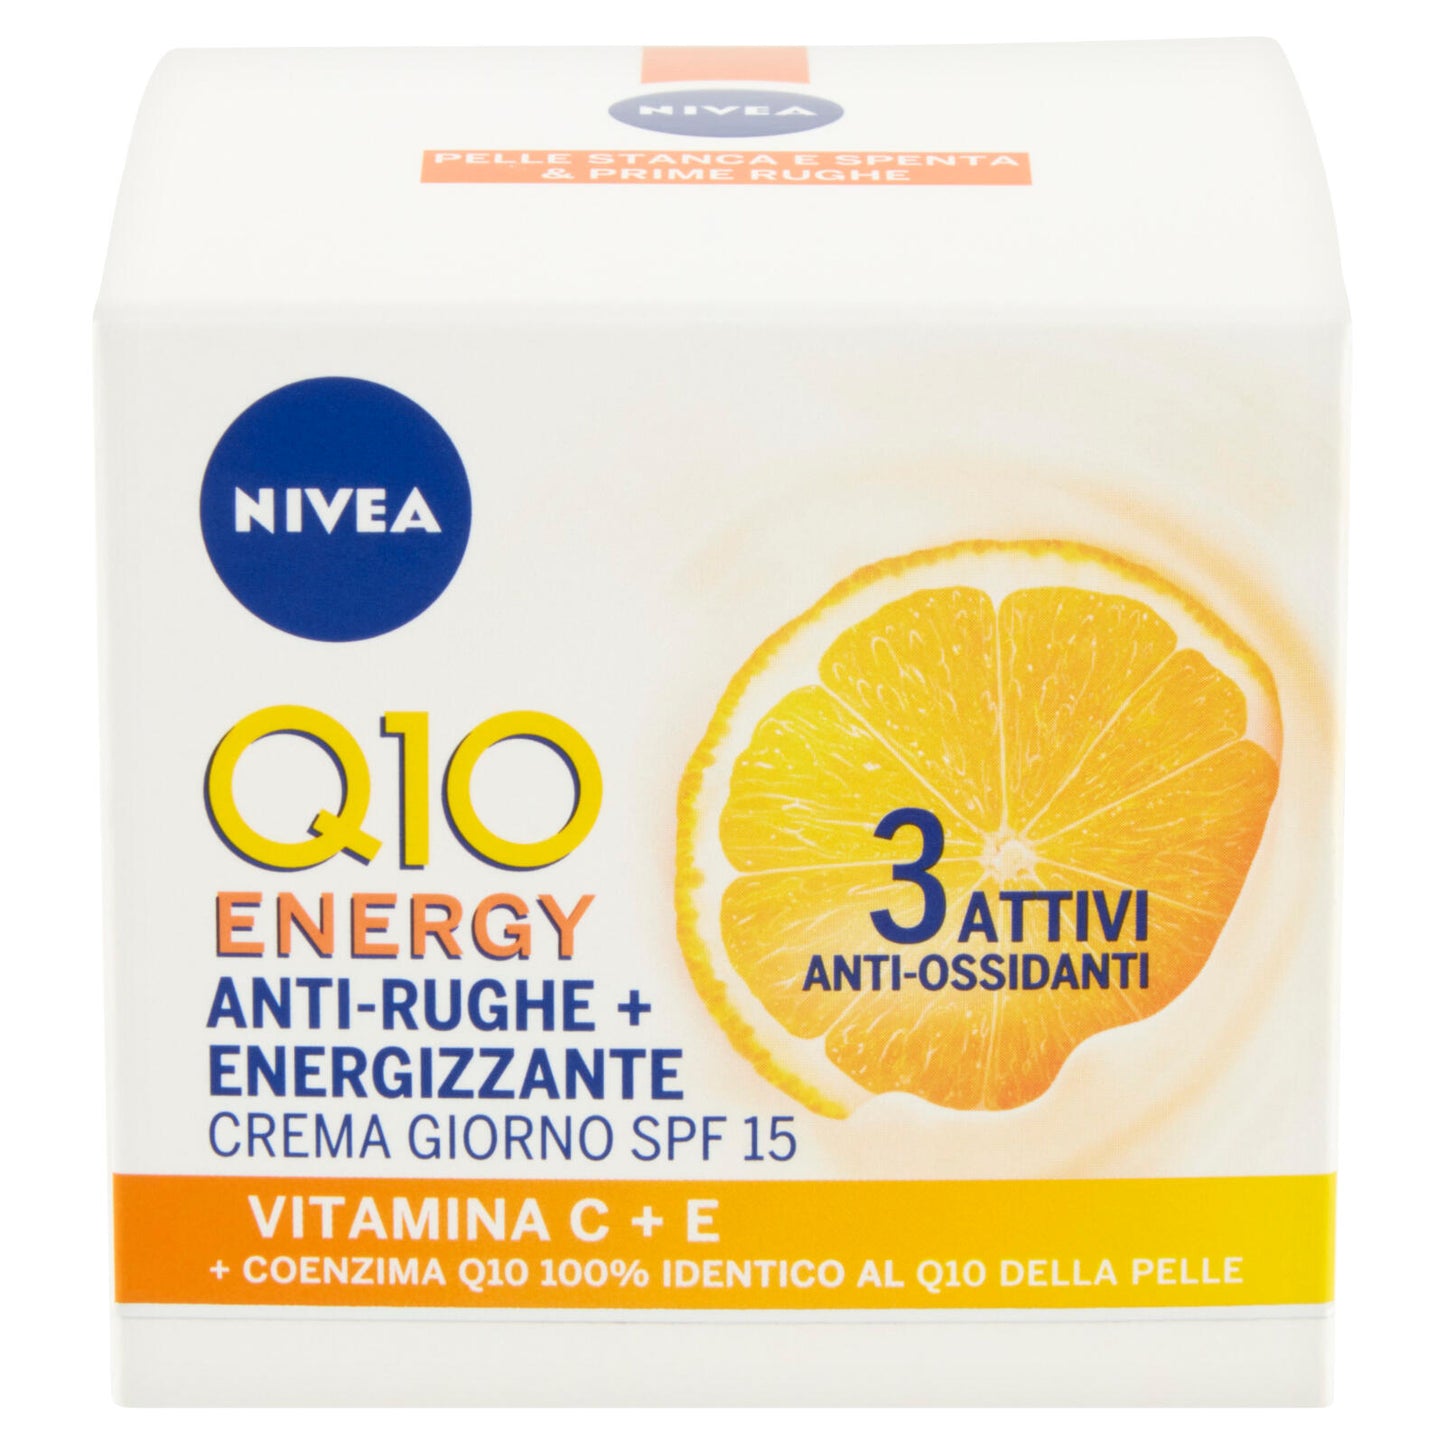 Nivea Q10 Energy Anti-Rughe + Energizzante Crema Giorno SPF 15 50 ml